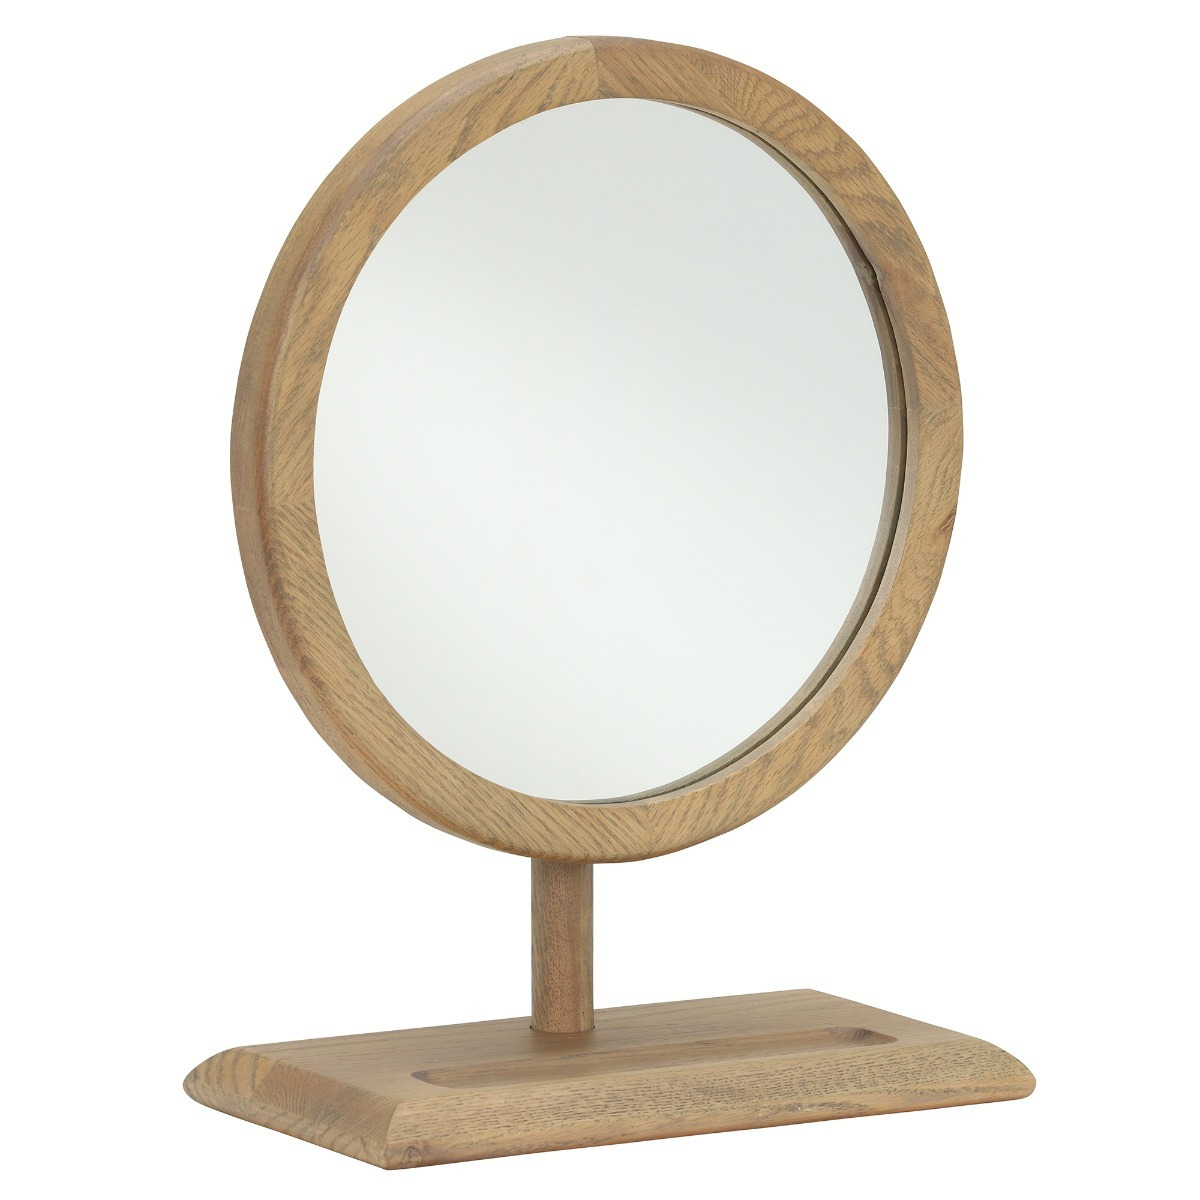 Runswick Mirror, Round, Oak Wood - Barker & Stonehouse - image 1